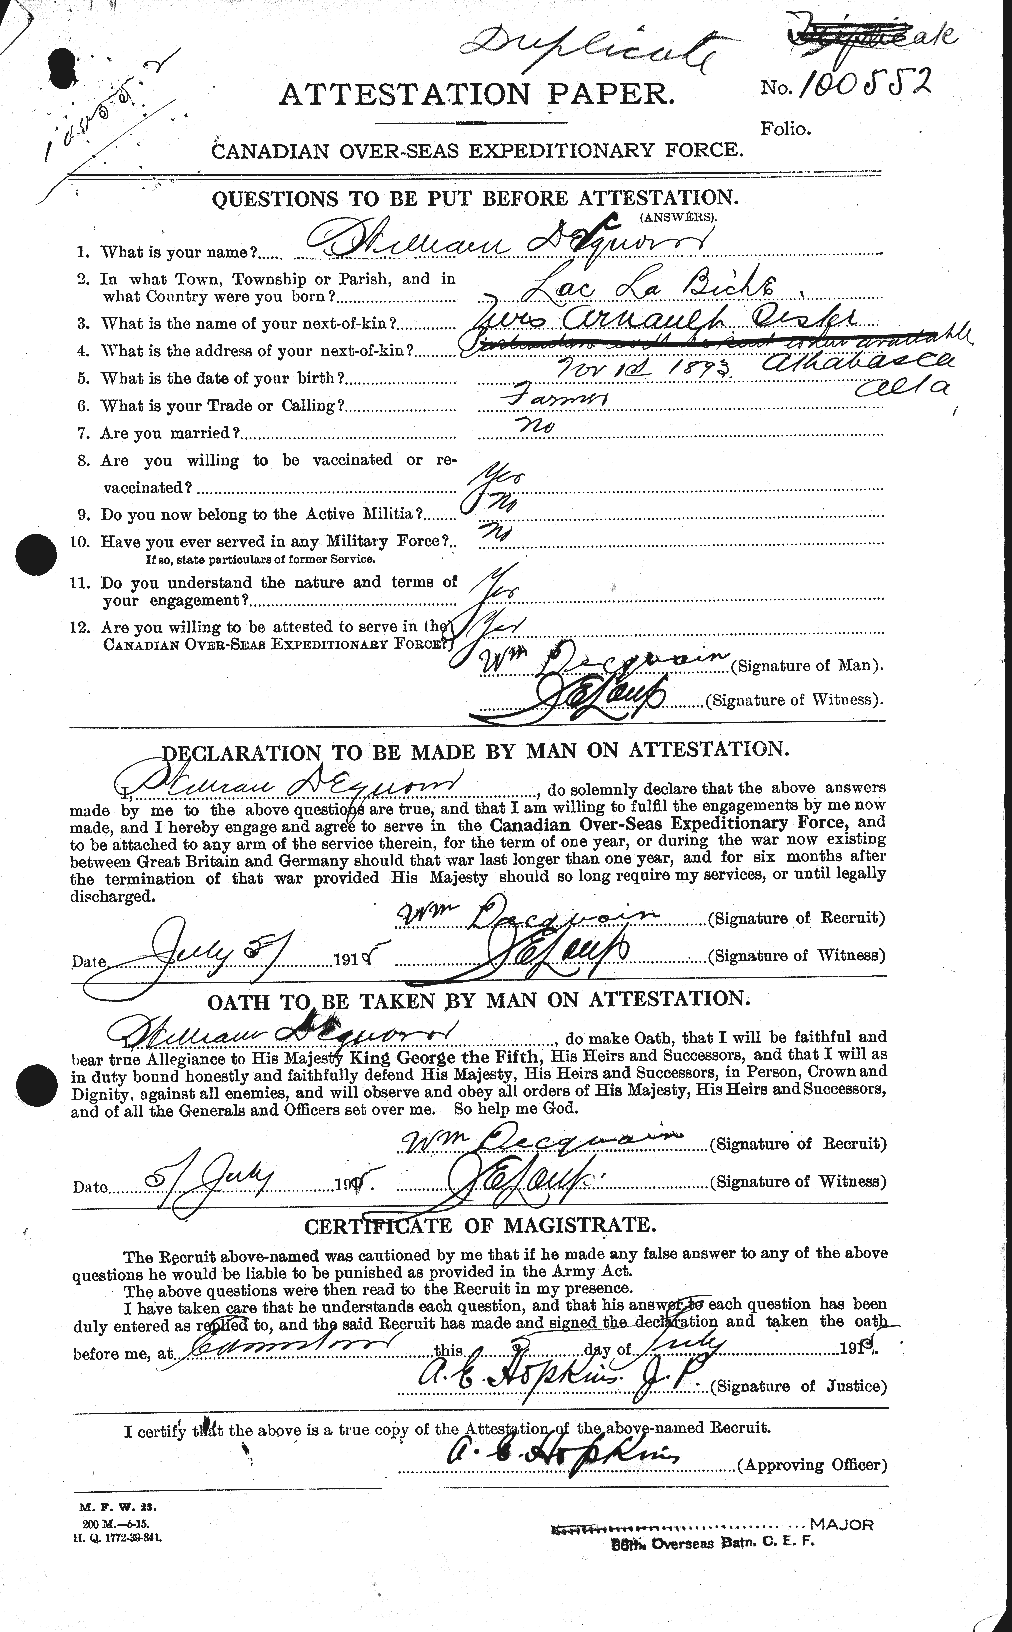 Dossiers du Personnel de la Première Guerre mondiale - CEC 285658a